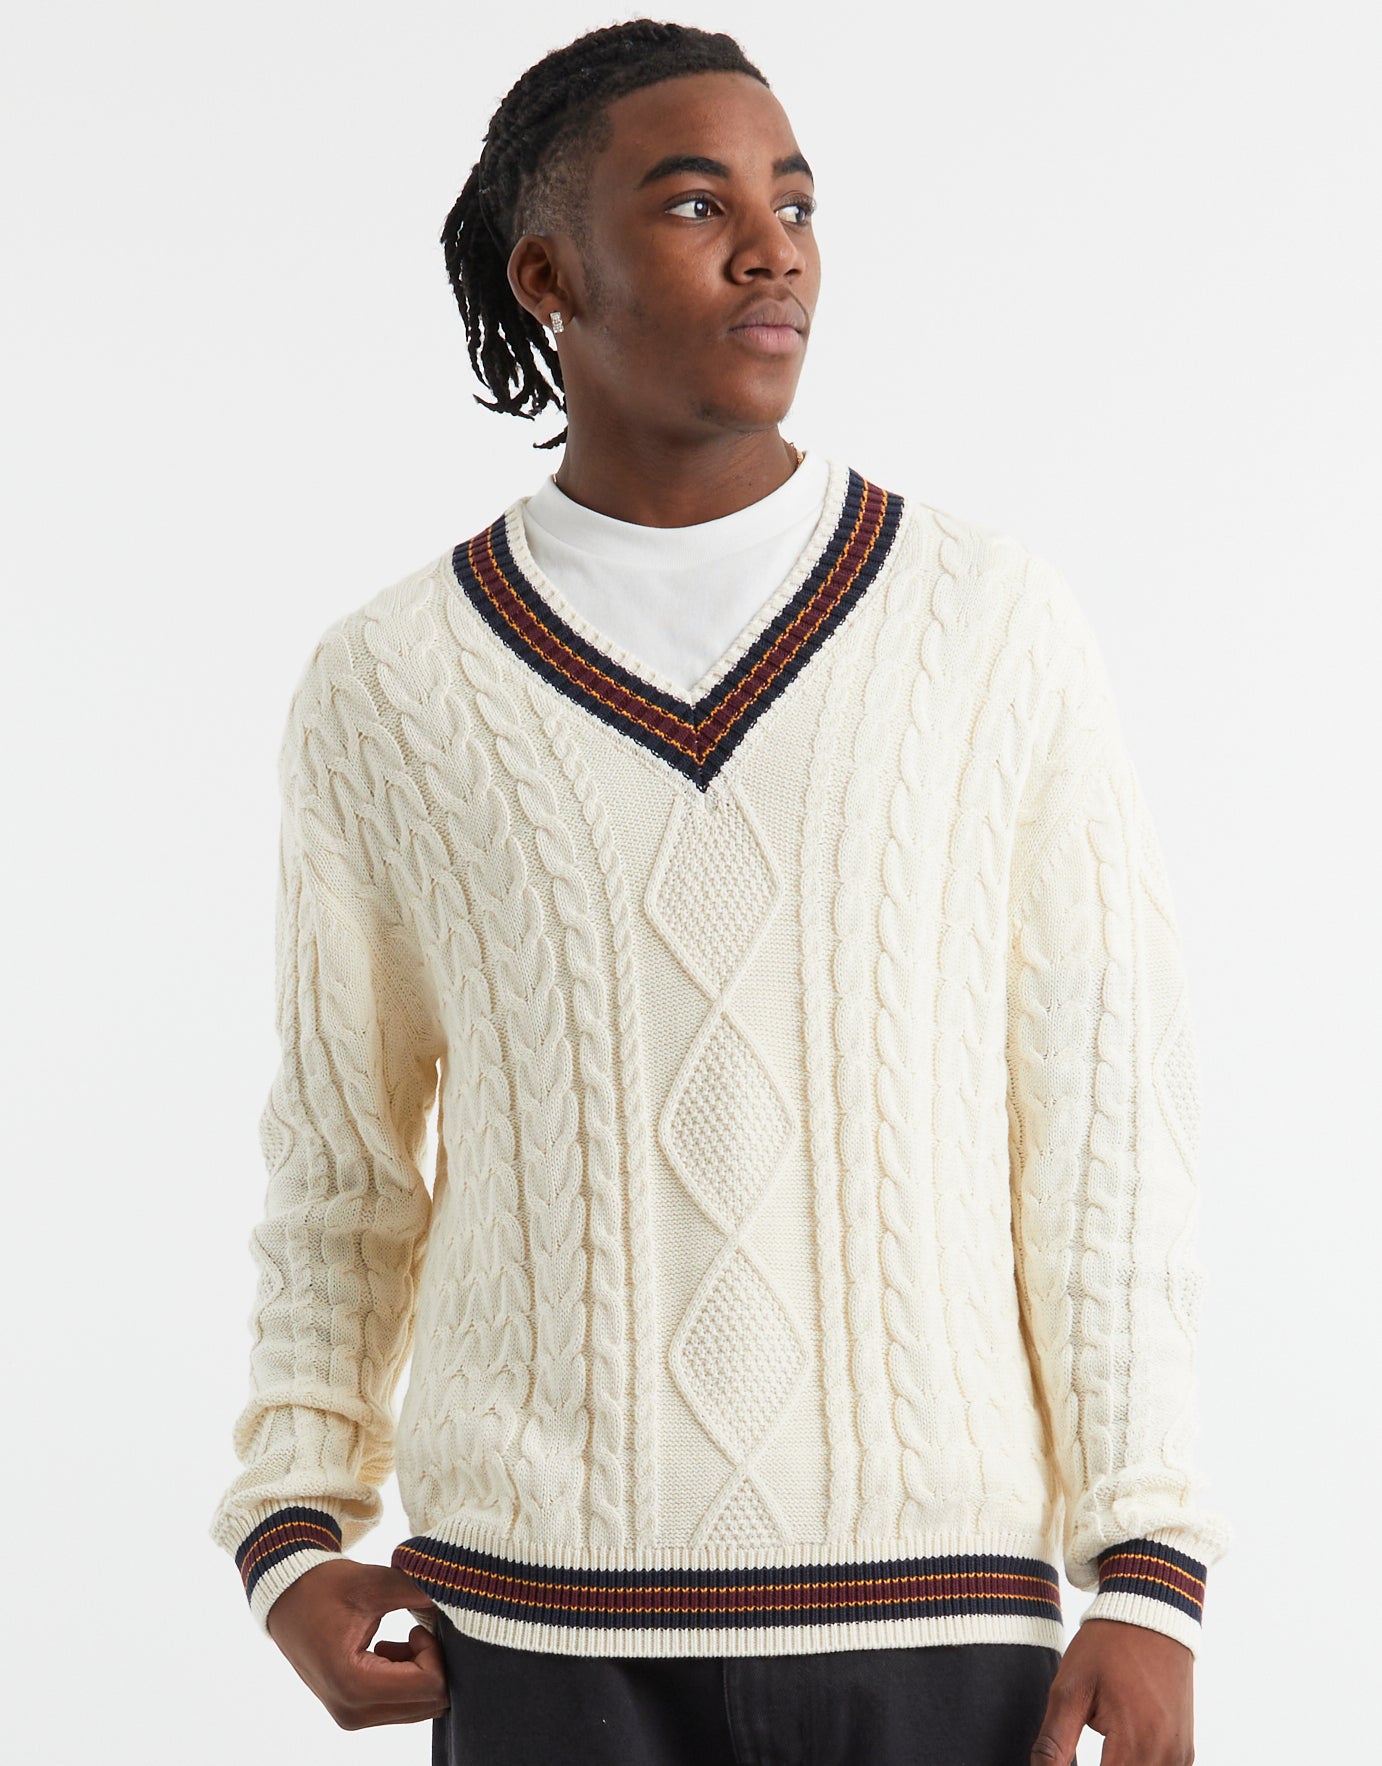 V-neck Stripe Cable Knitted Jumper in Cream | Hallensteins NZ